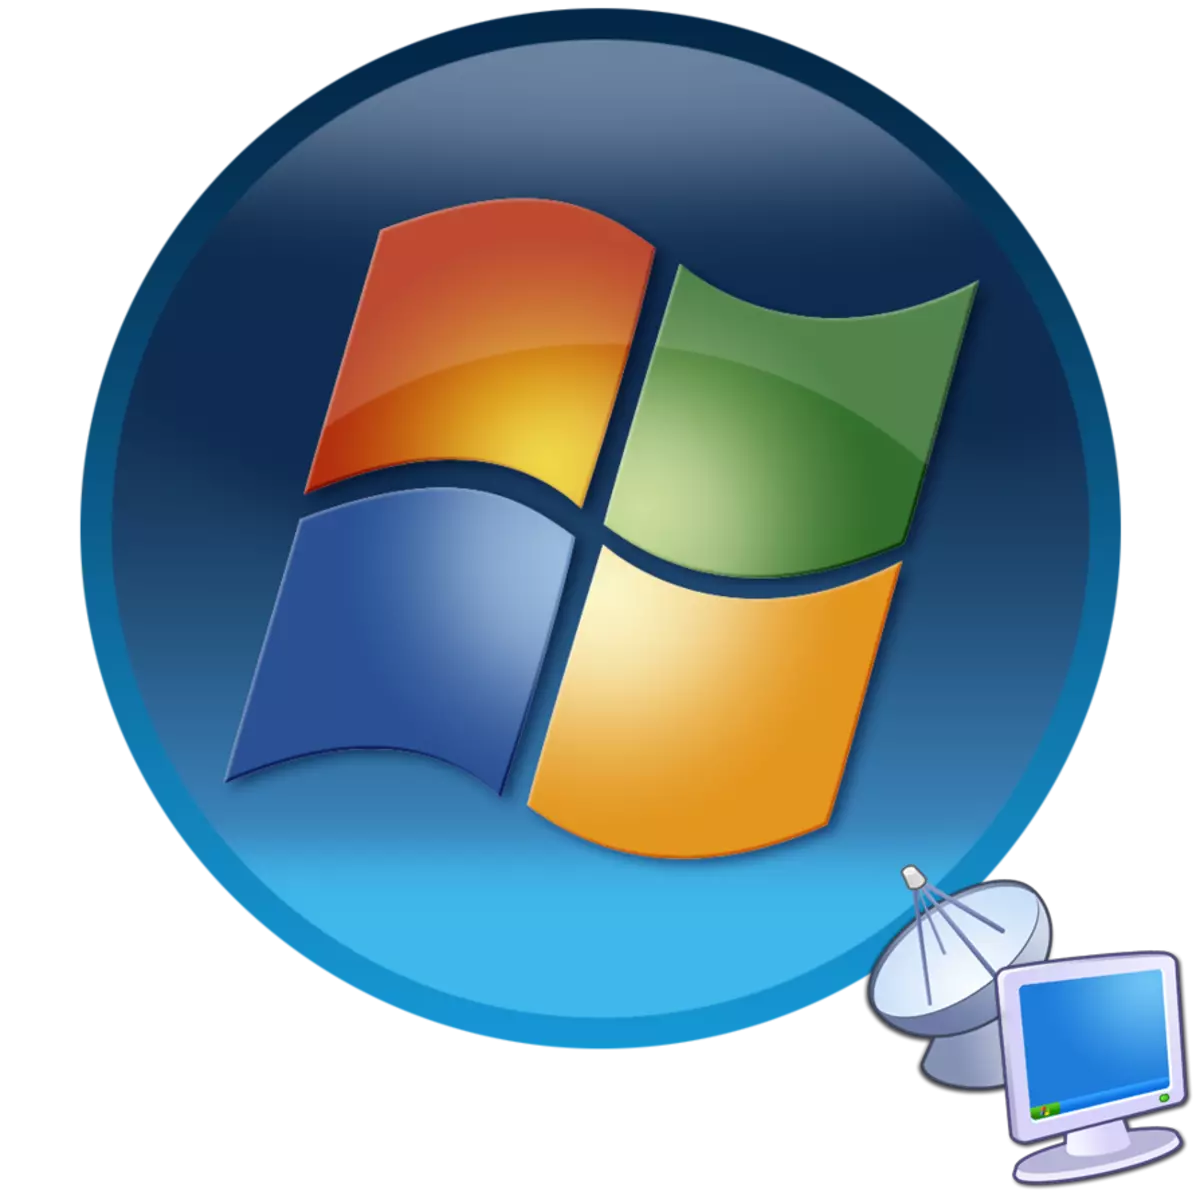 RDP 7 a Windows 7 rendszerben